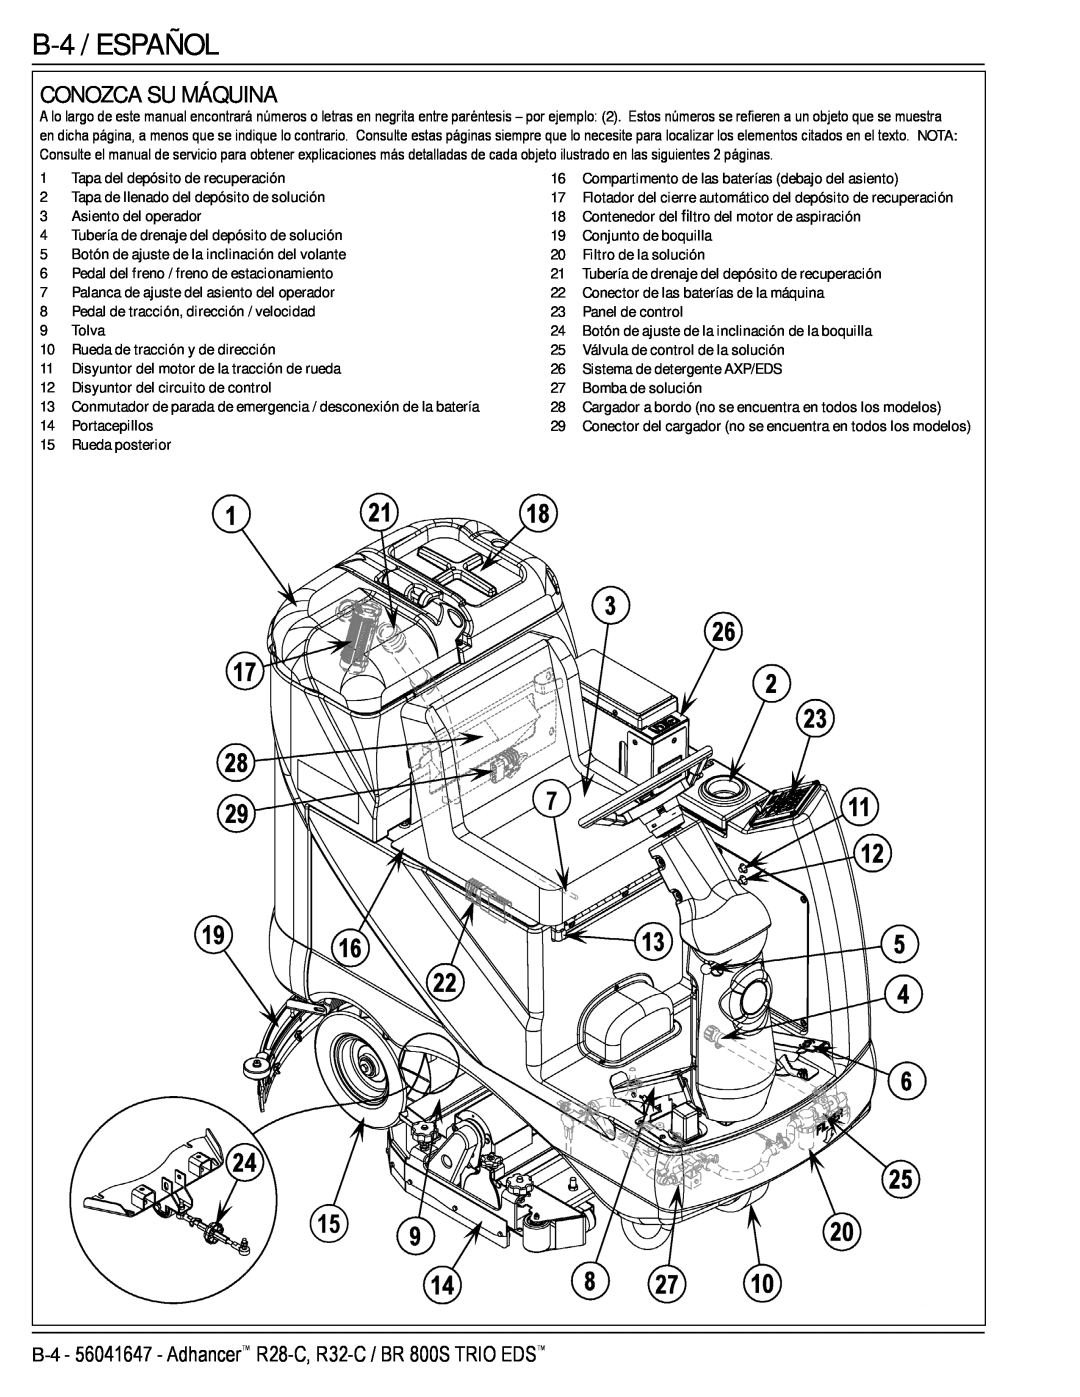 Nilfisk-Advance America 56316026 (R32-C) manual B-4 /ESPAÑOL, Conozca Su Máquina, Tapa del depósito de recuperación, Tolva 